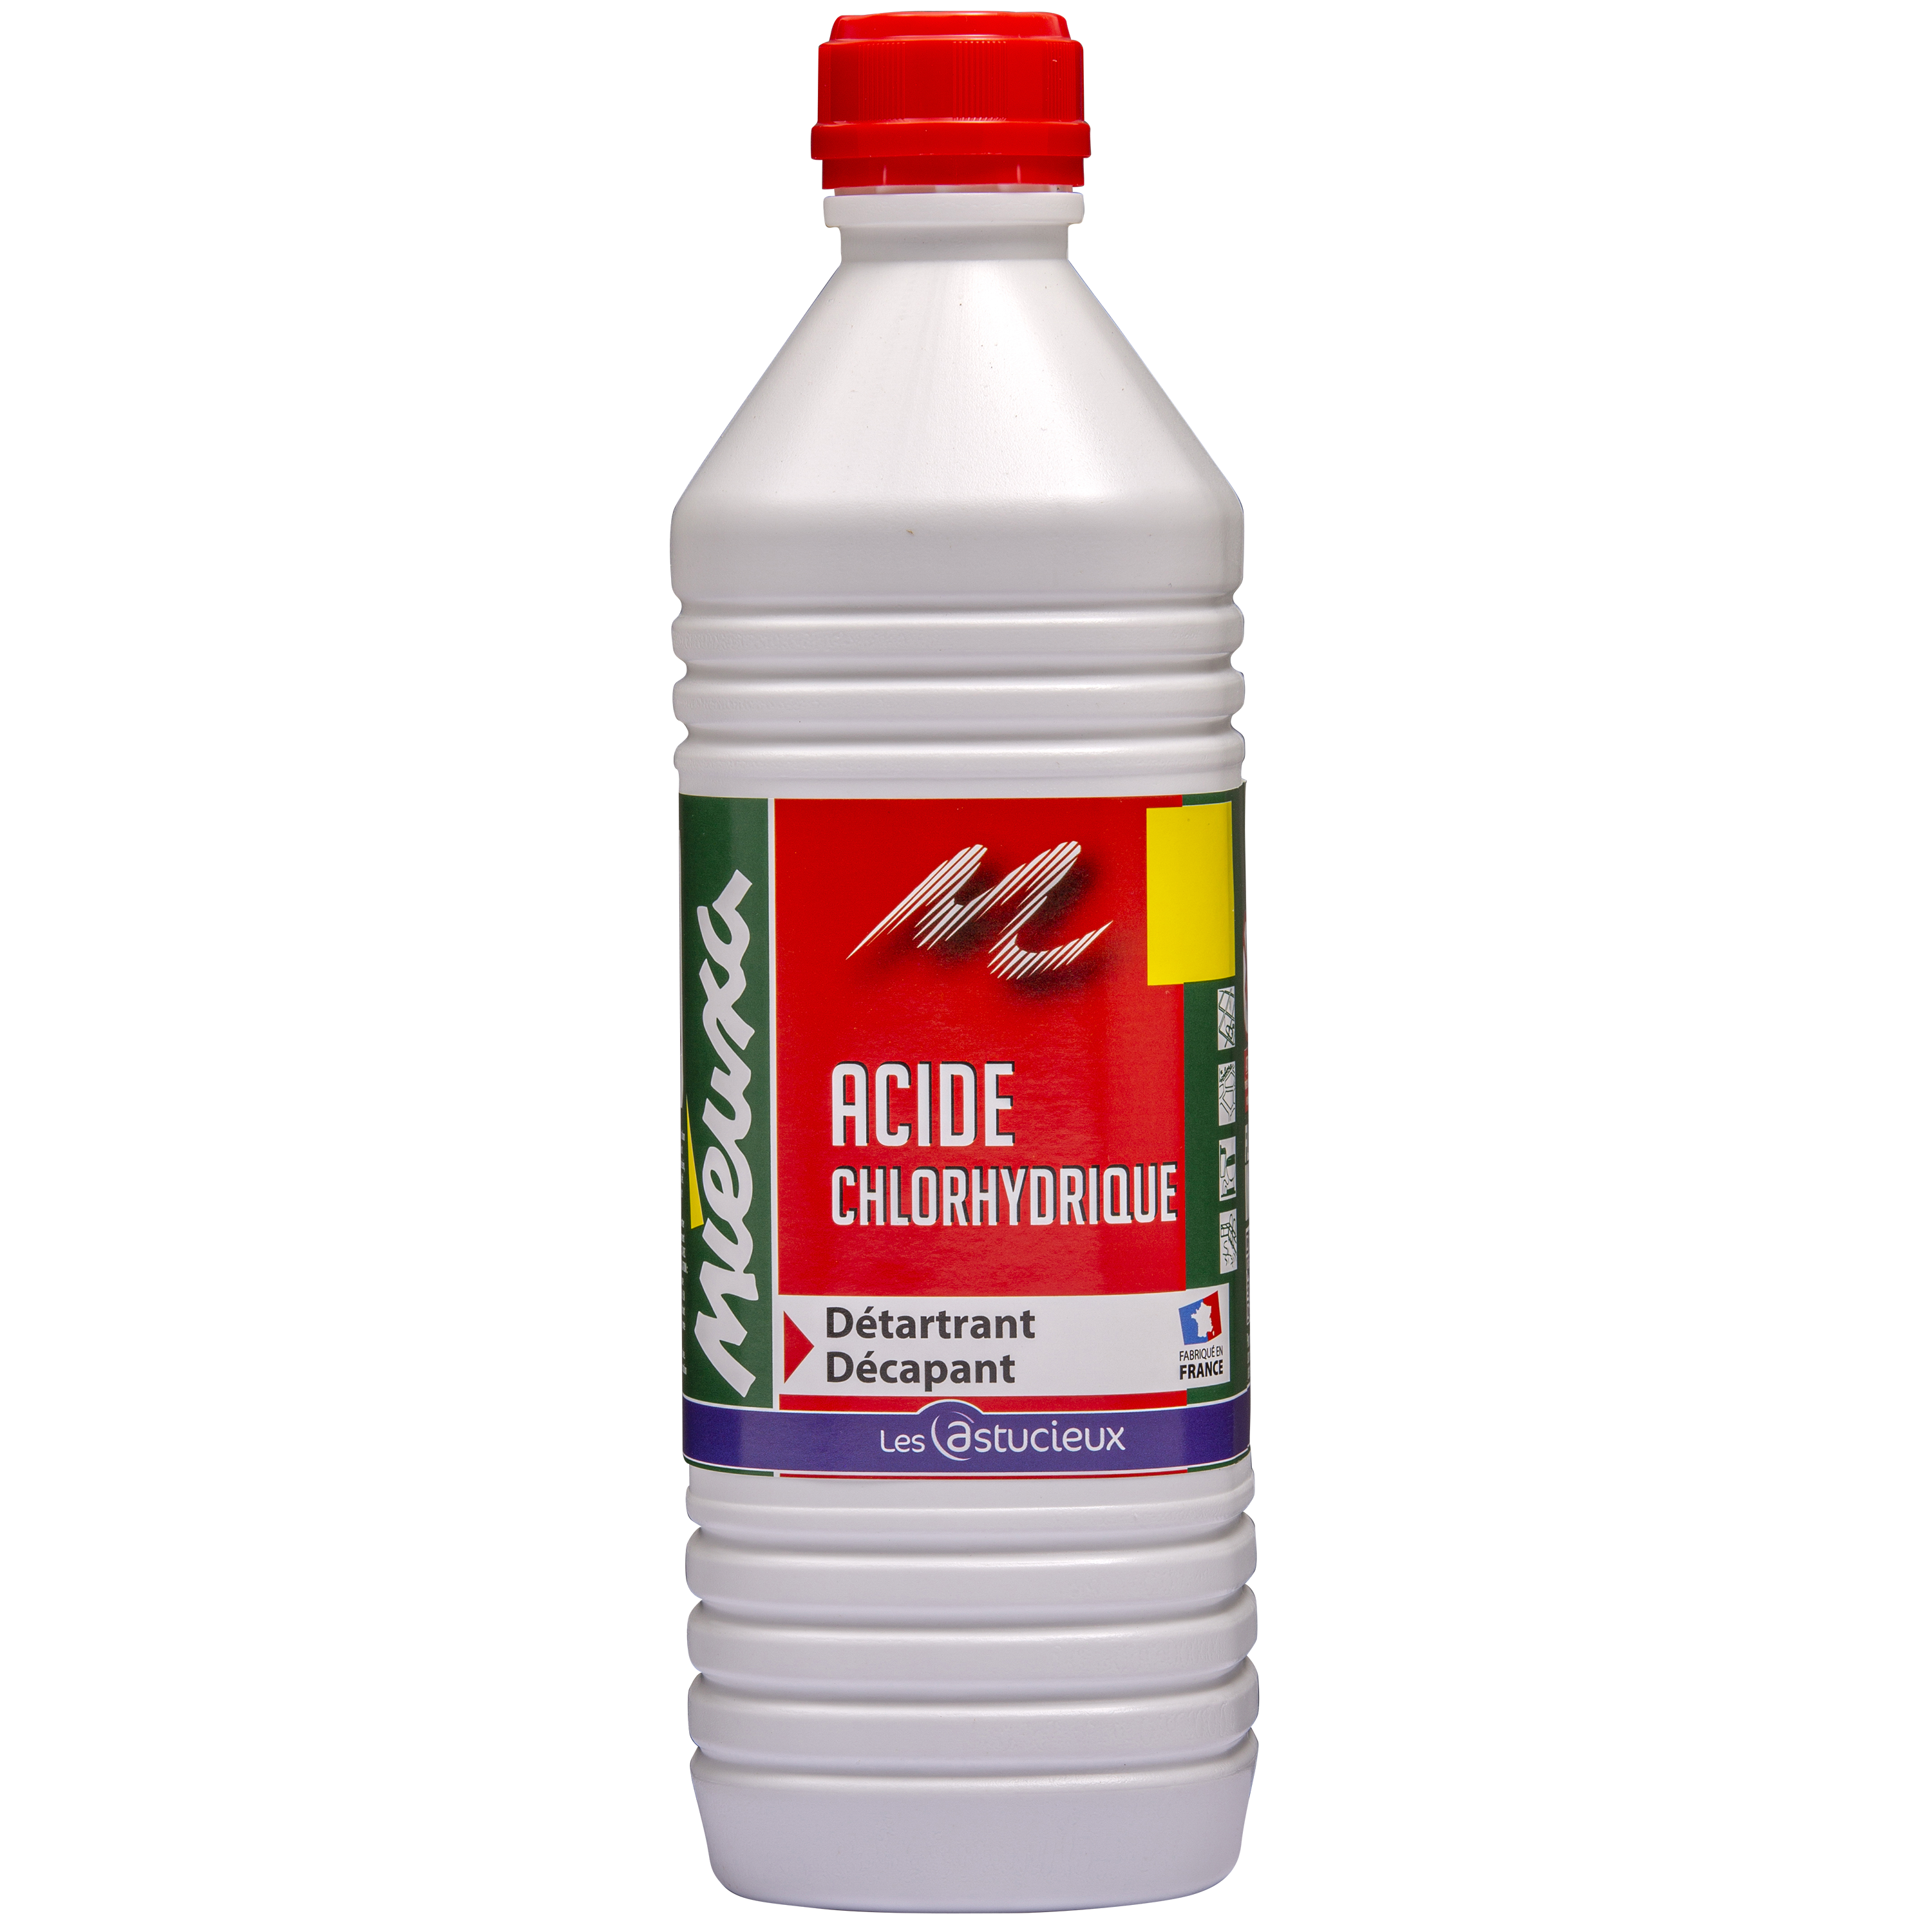 Acide chlorhydrique MIEUXA, 1 l